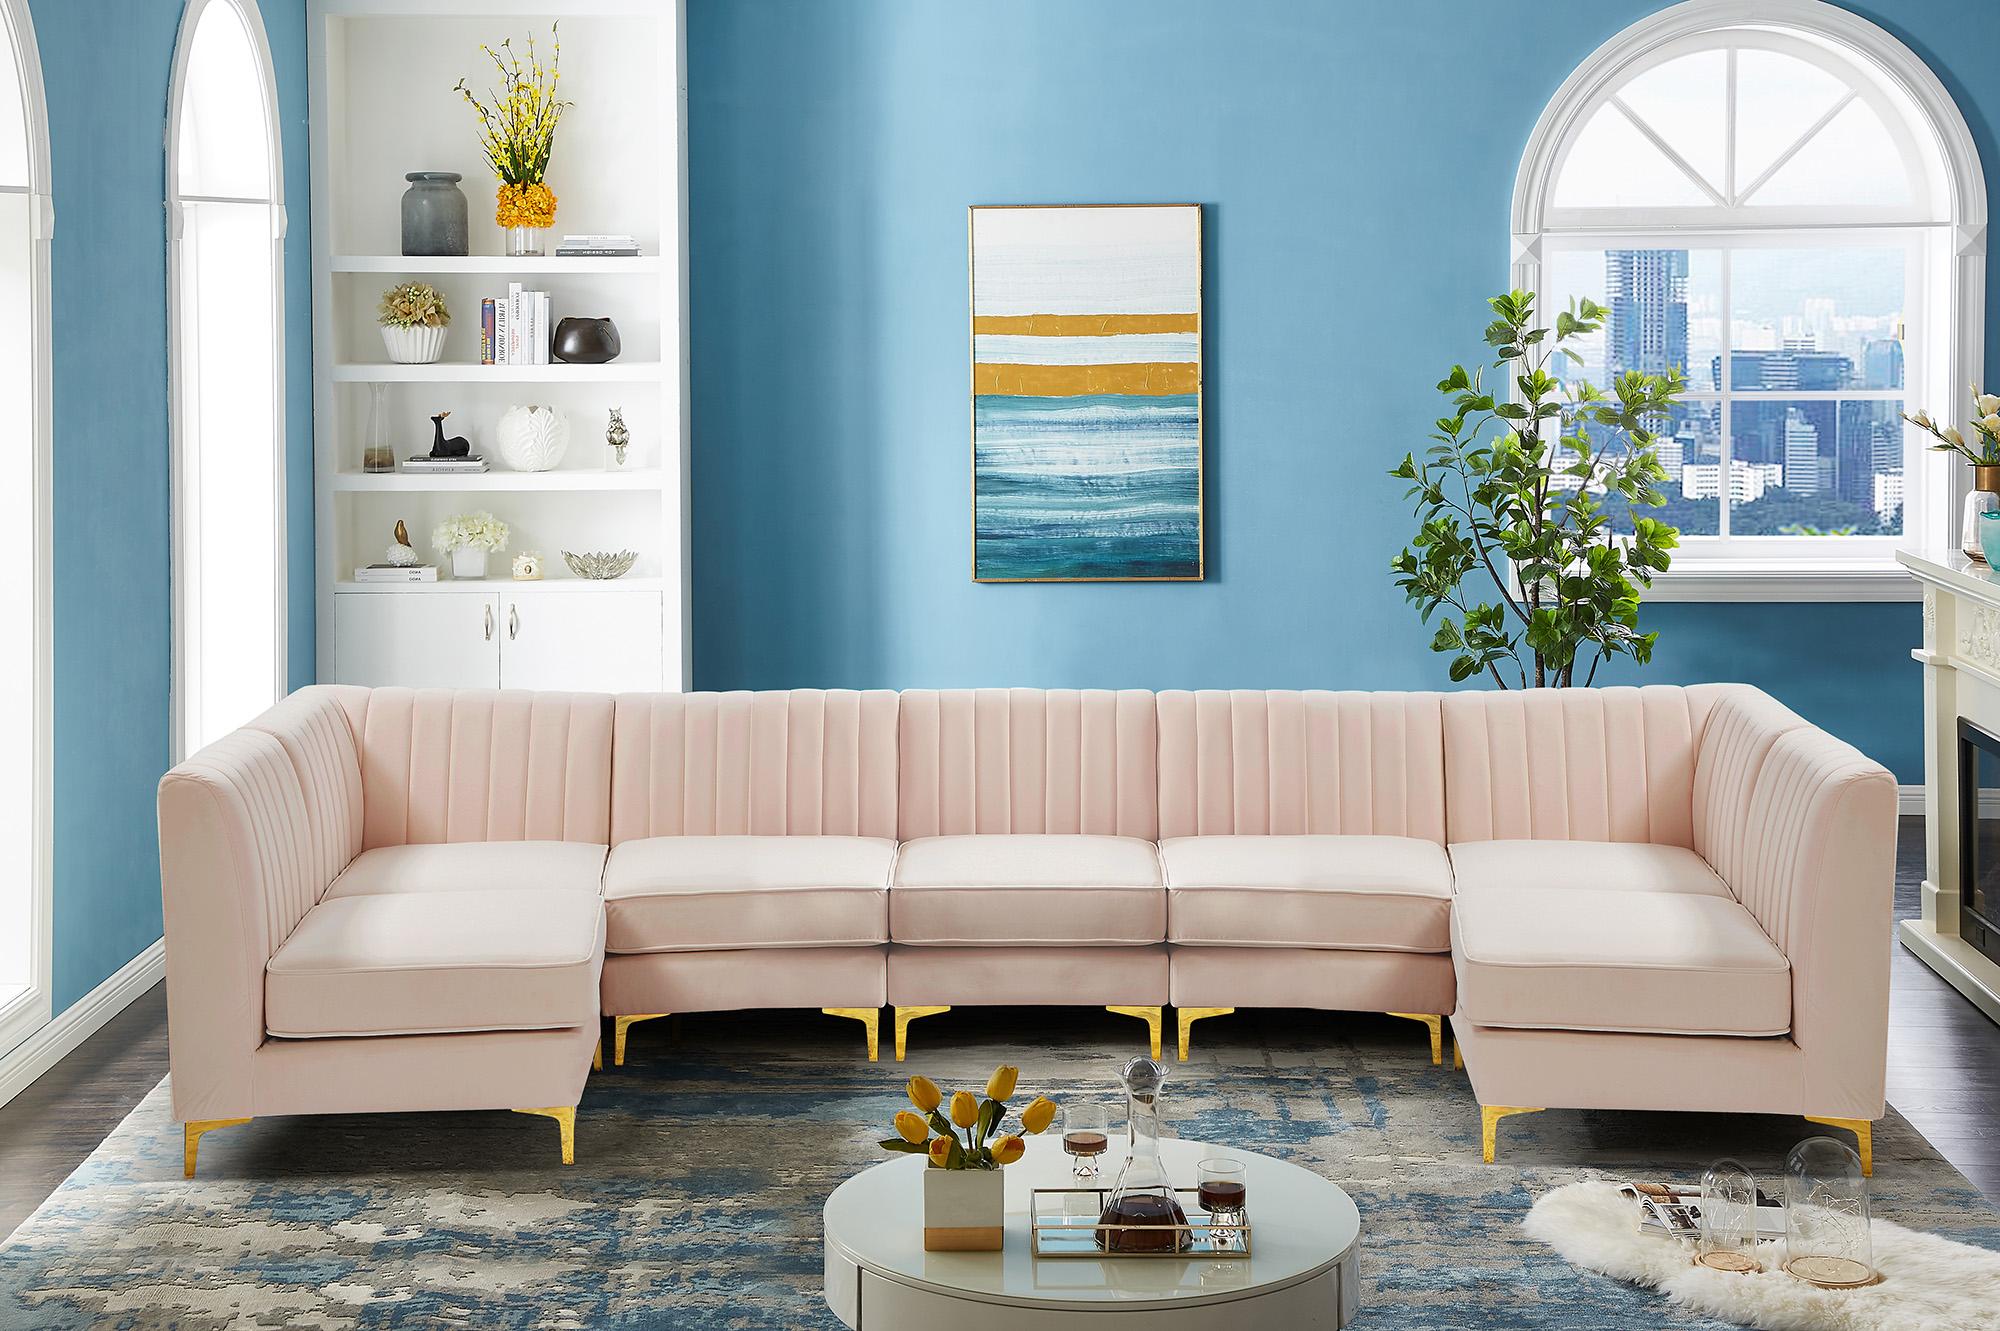 

    
Meridian Furniture ALINA 604Pink-Sec7A Modular Sectional Sofa Pink 604Pink-Sec7A
